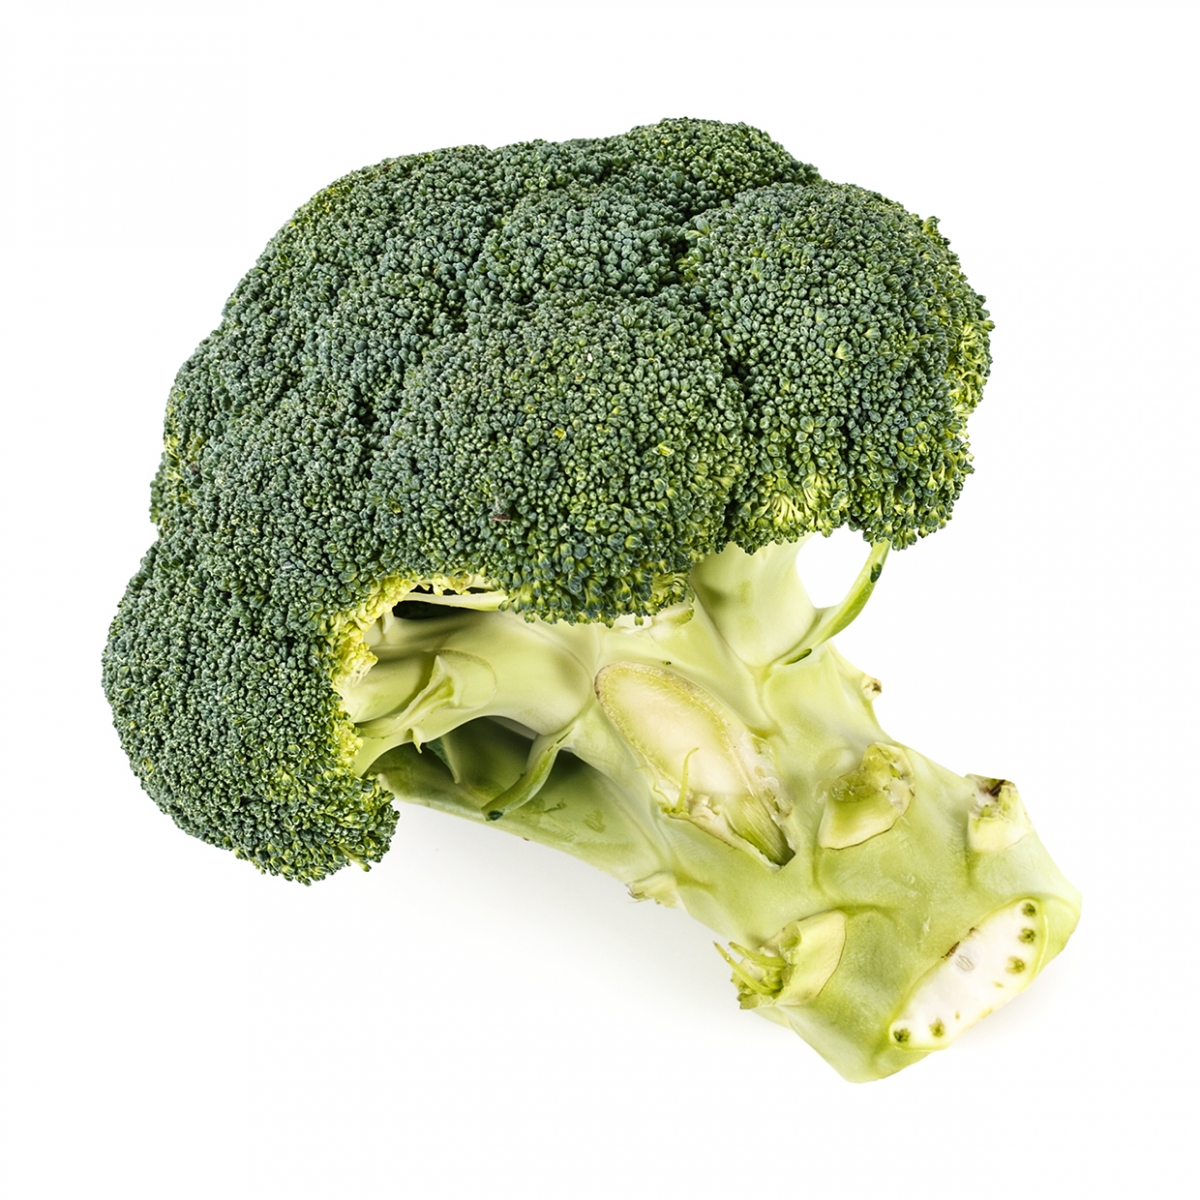 Imagen en la que se ve un brócoli